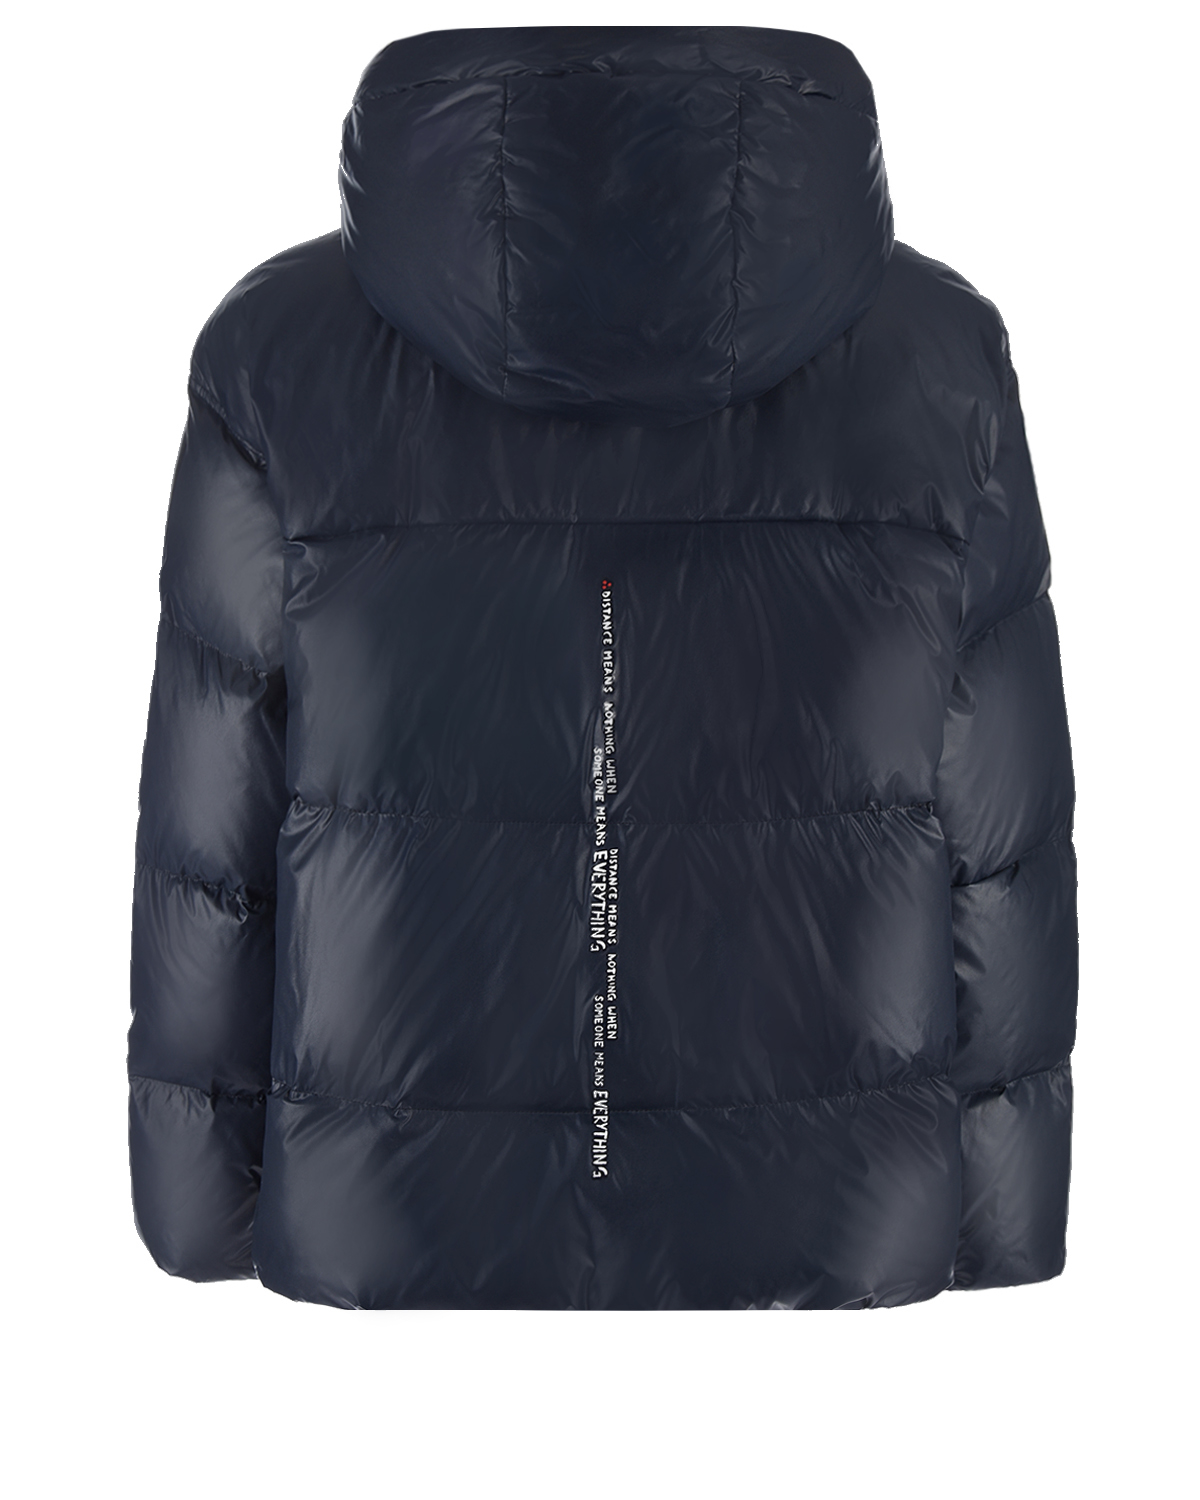 Зимняя двухсторонняя куртка Peuterey, размер 38, цвет синий - фото 5